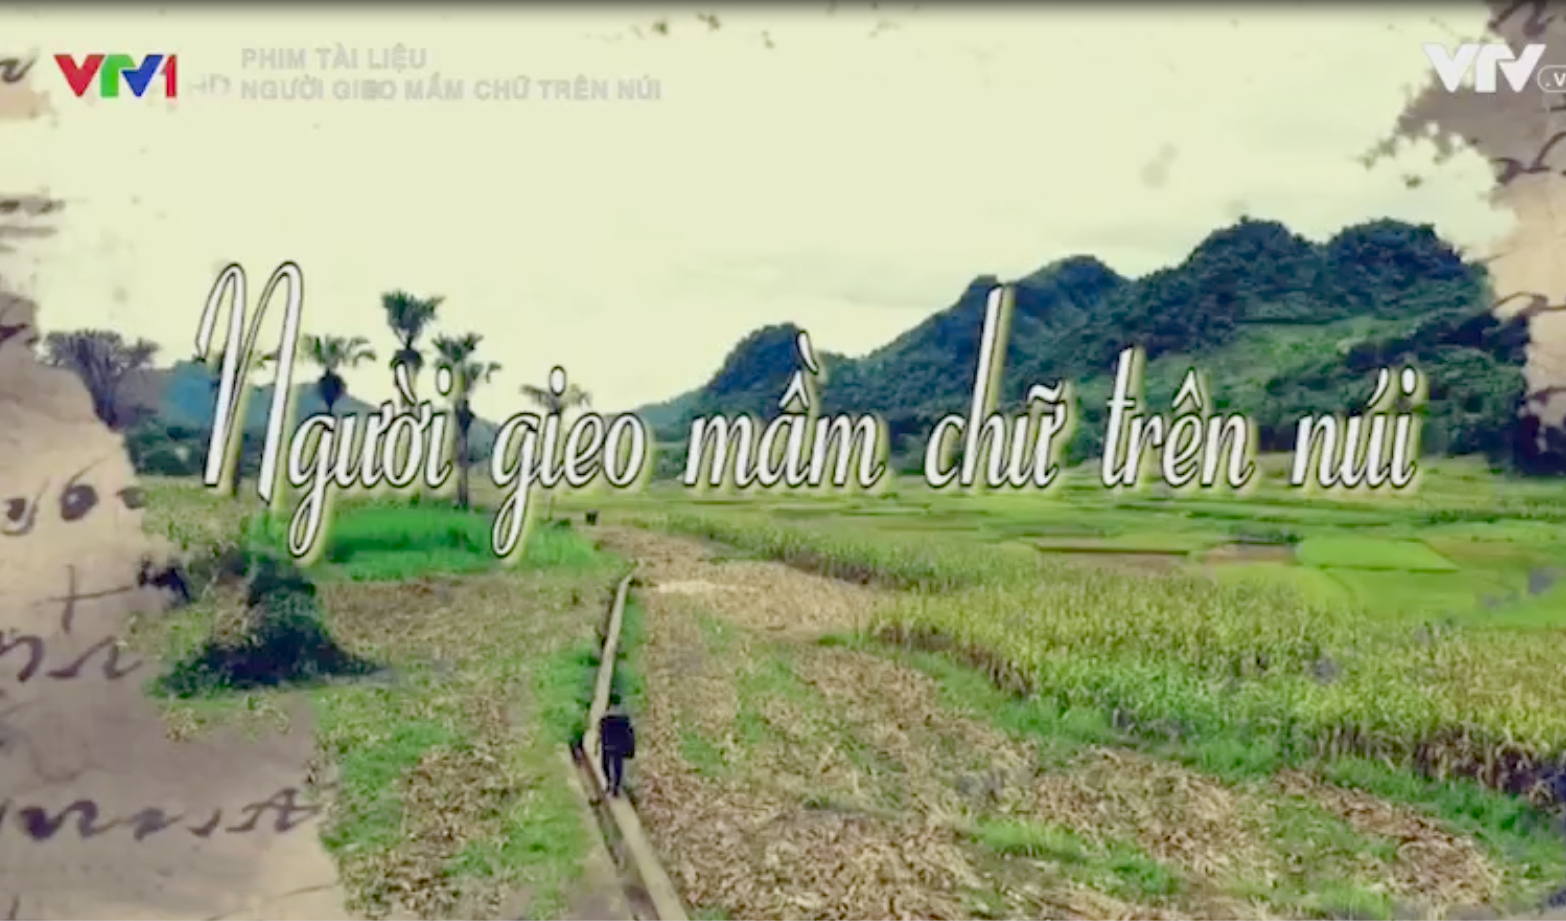 Phim tài liệu: Người gieo mầm chữ trên núi 